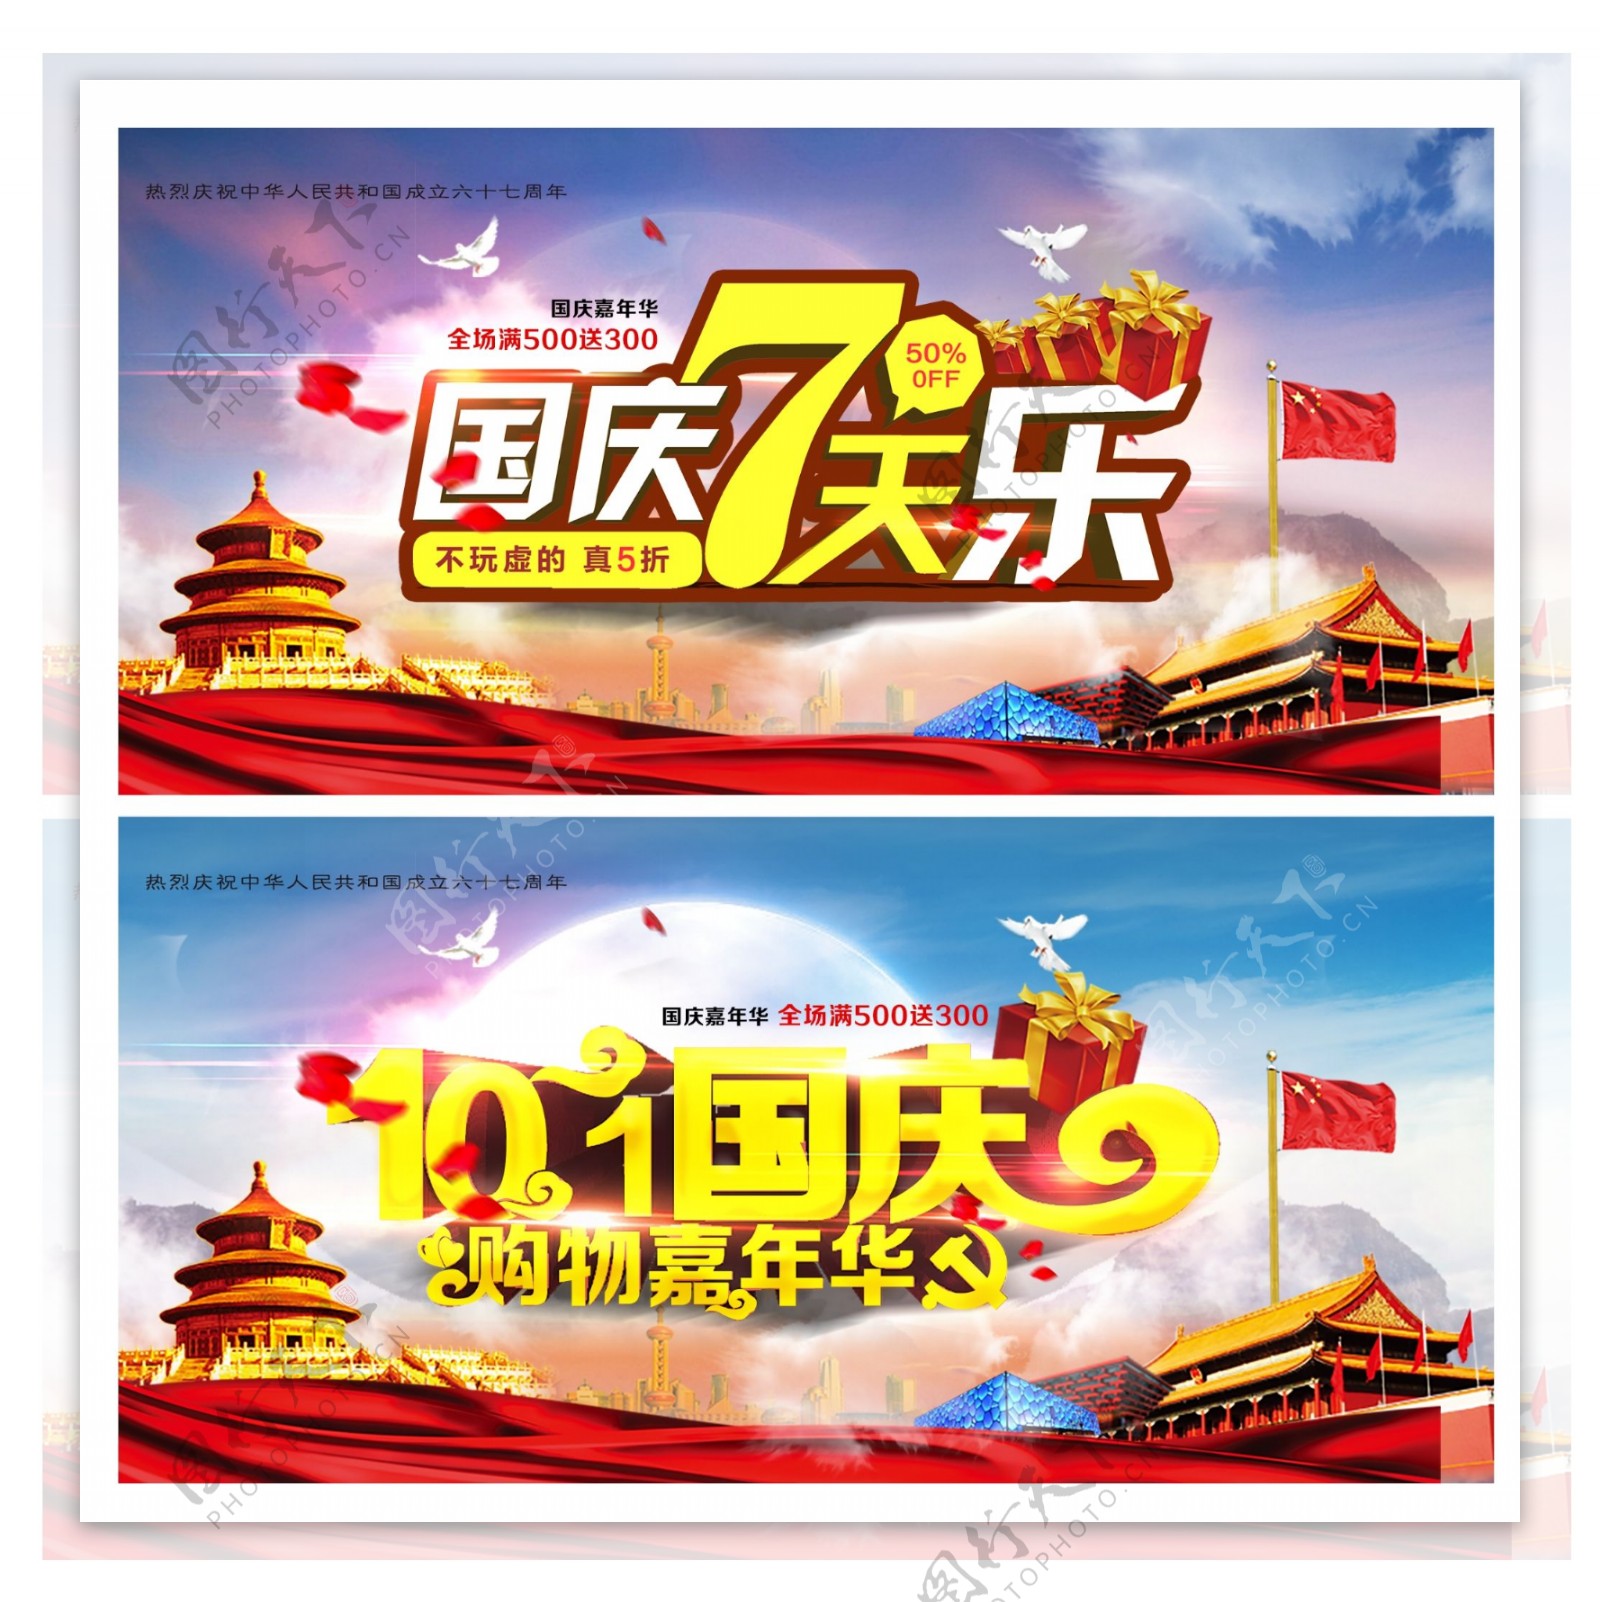 国庆七天乐促销活动海报设计psd素材下载